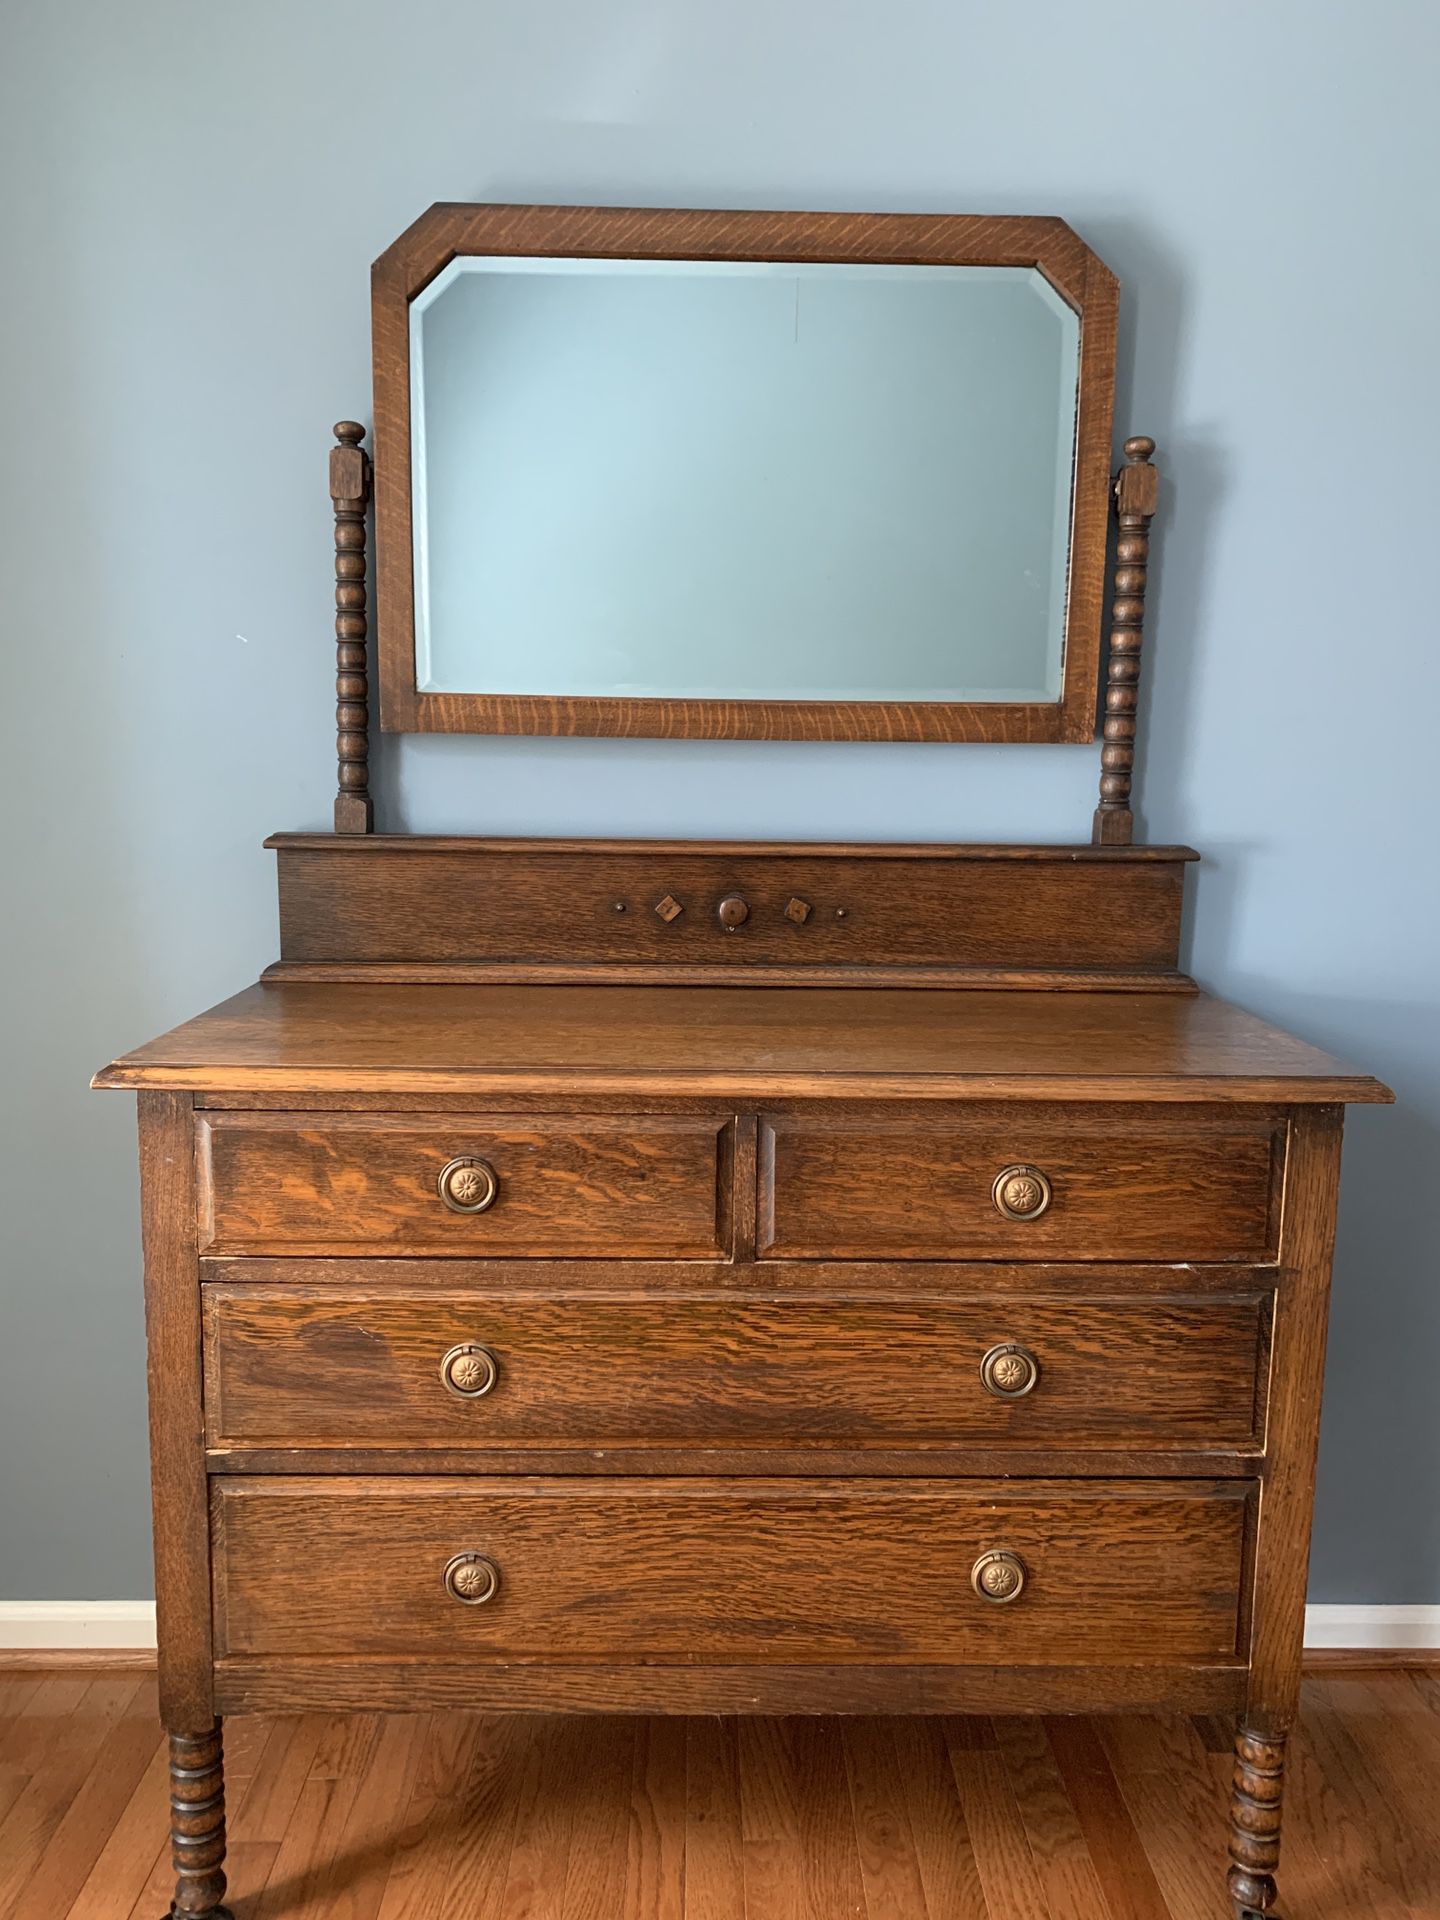 Antique mirror dresser